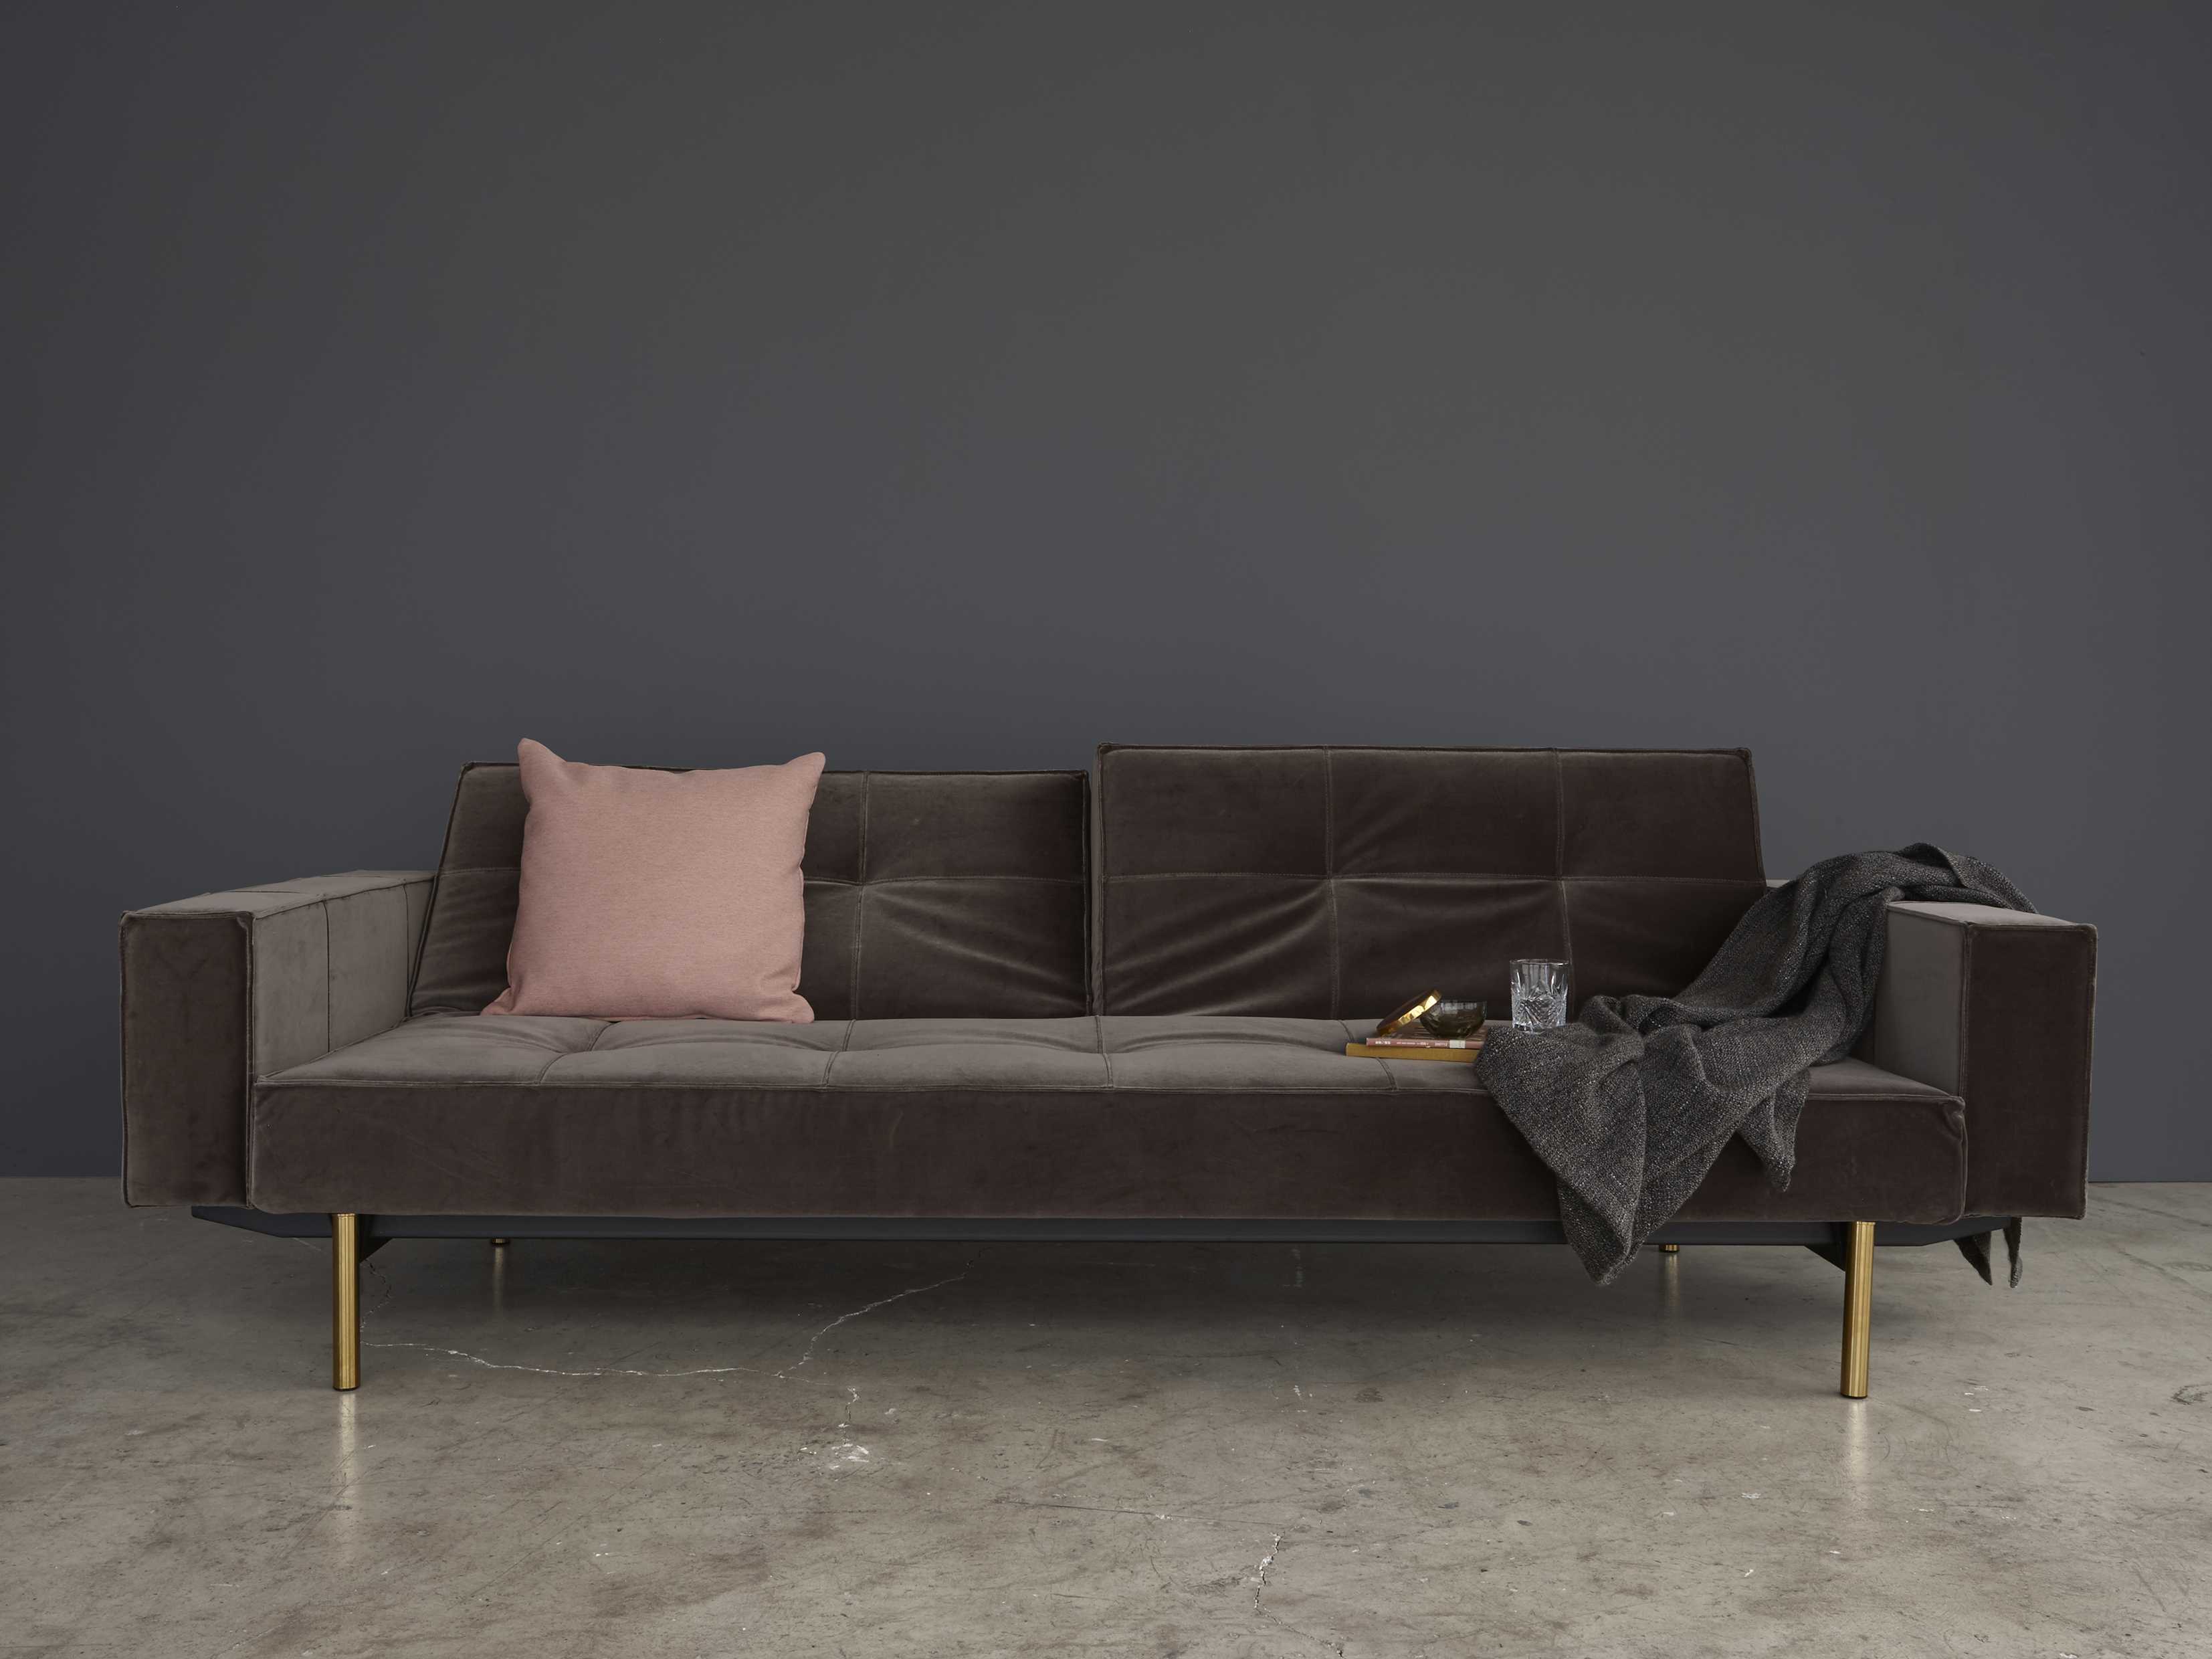 innovation splitback sofa bed